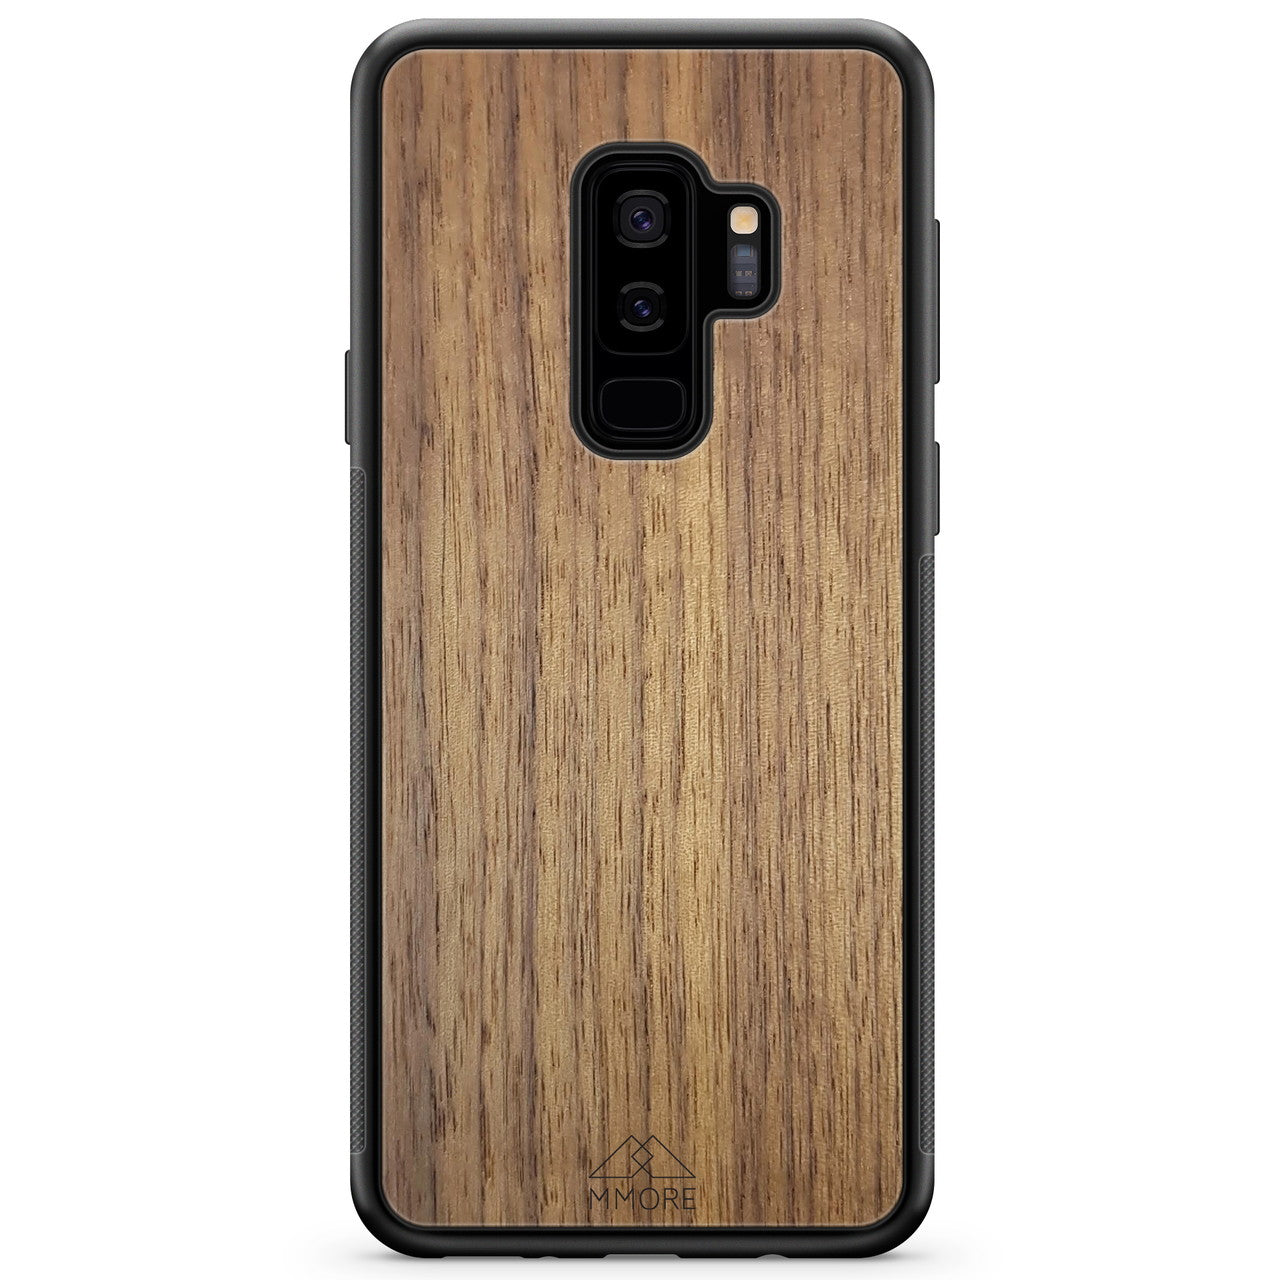 Samsung S9 Plus Holz-Handyhülle aus amerikanischem Walnussholz